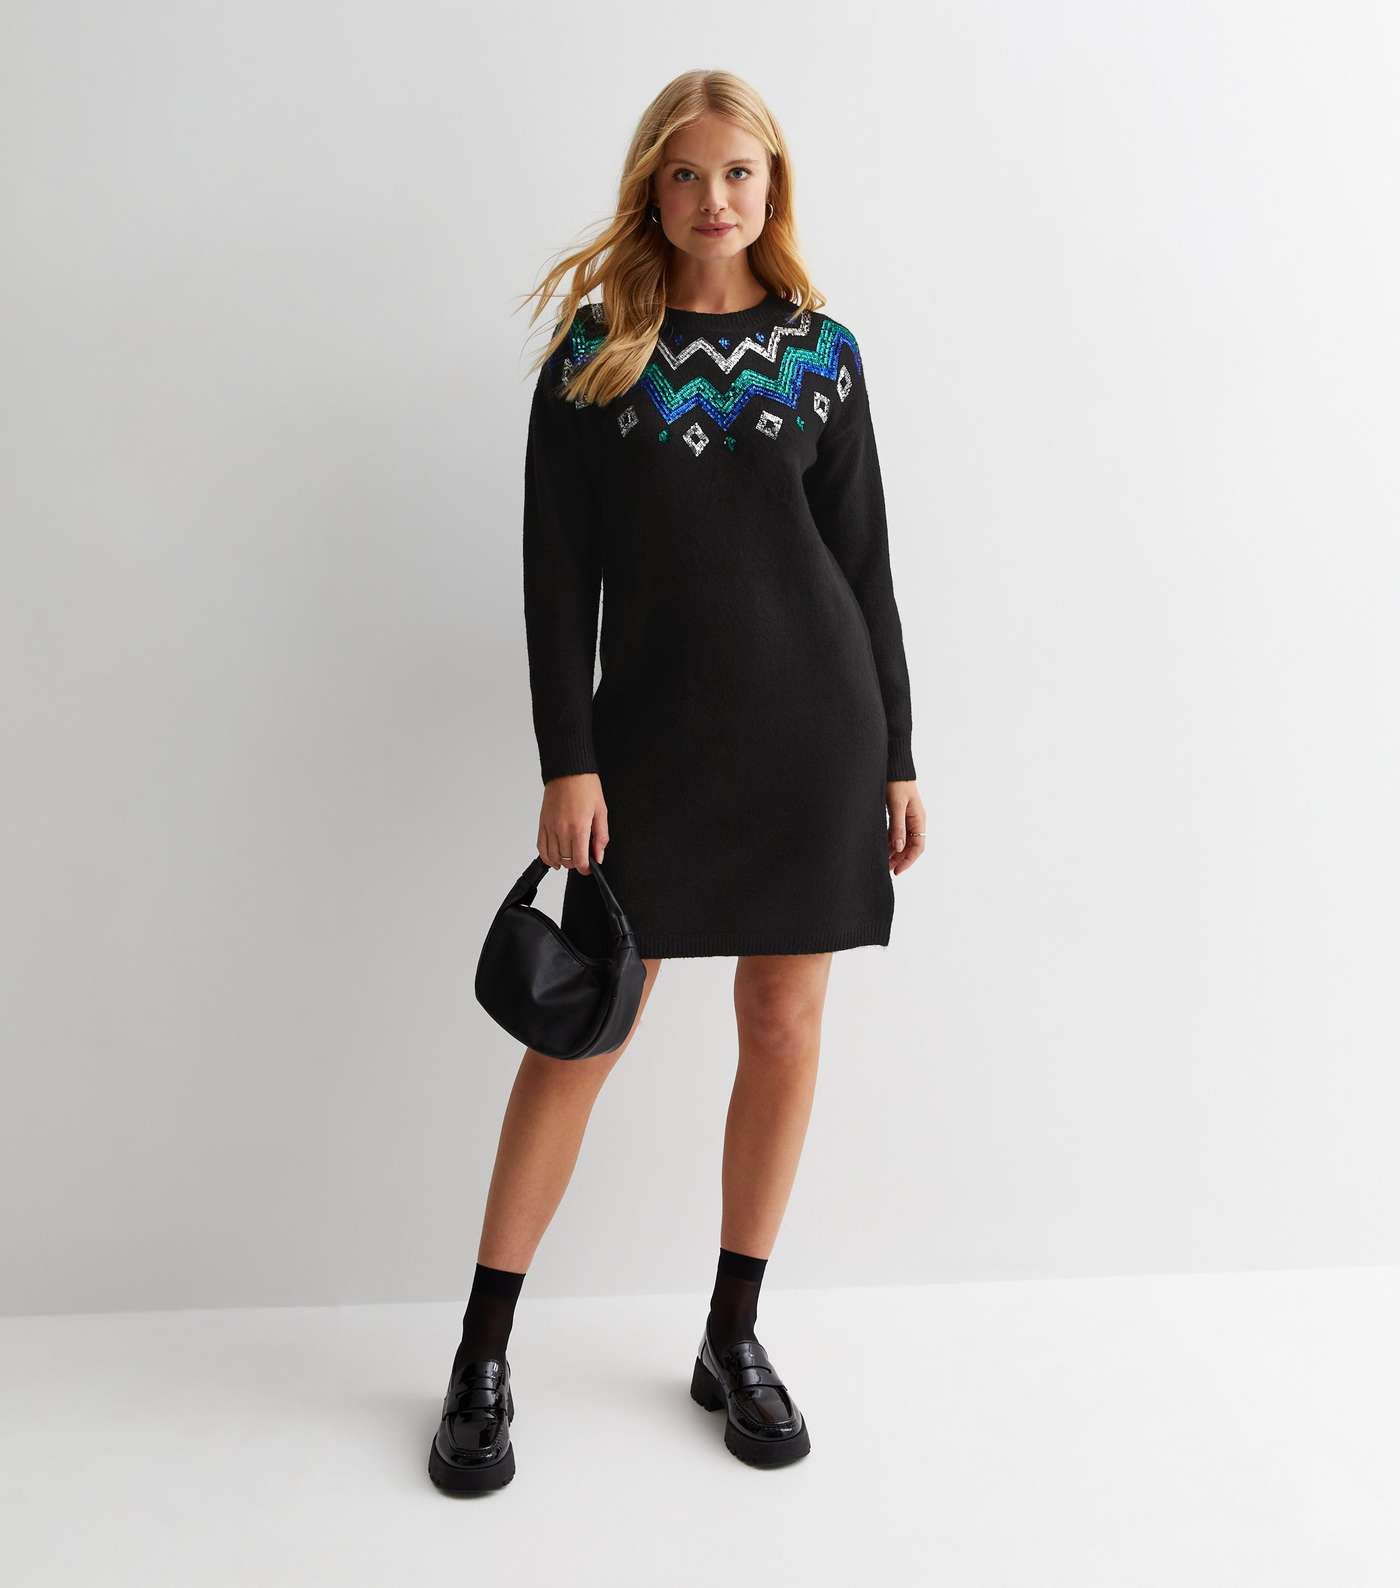 Sunshine Soul Black Sequin Embellished Knit Jumper Dress Image 3